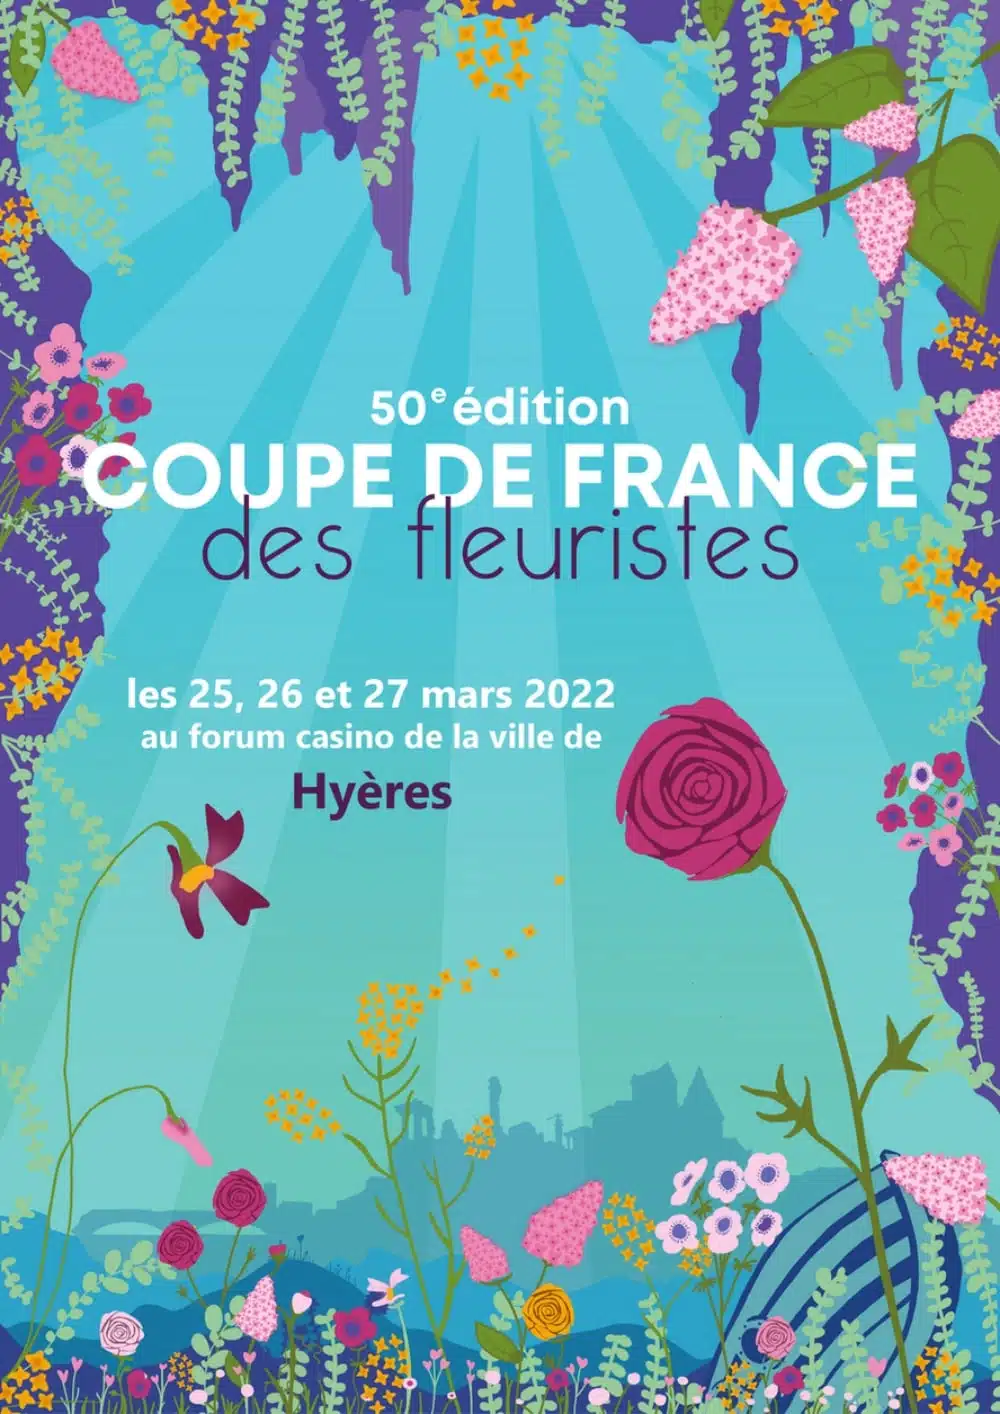 Place à l'Excellence ! - Découvrez les candidats de la 50ème édition de la Coupe de France des Fleuristes, le 25, 26 et 27 mars 2022 à Hyères